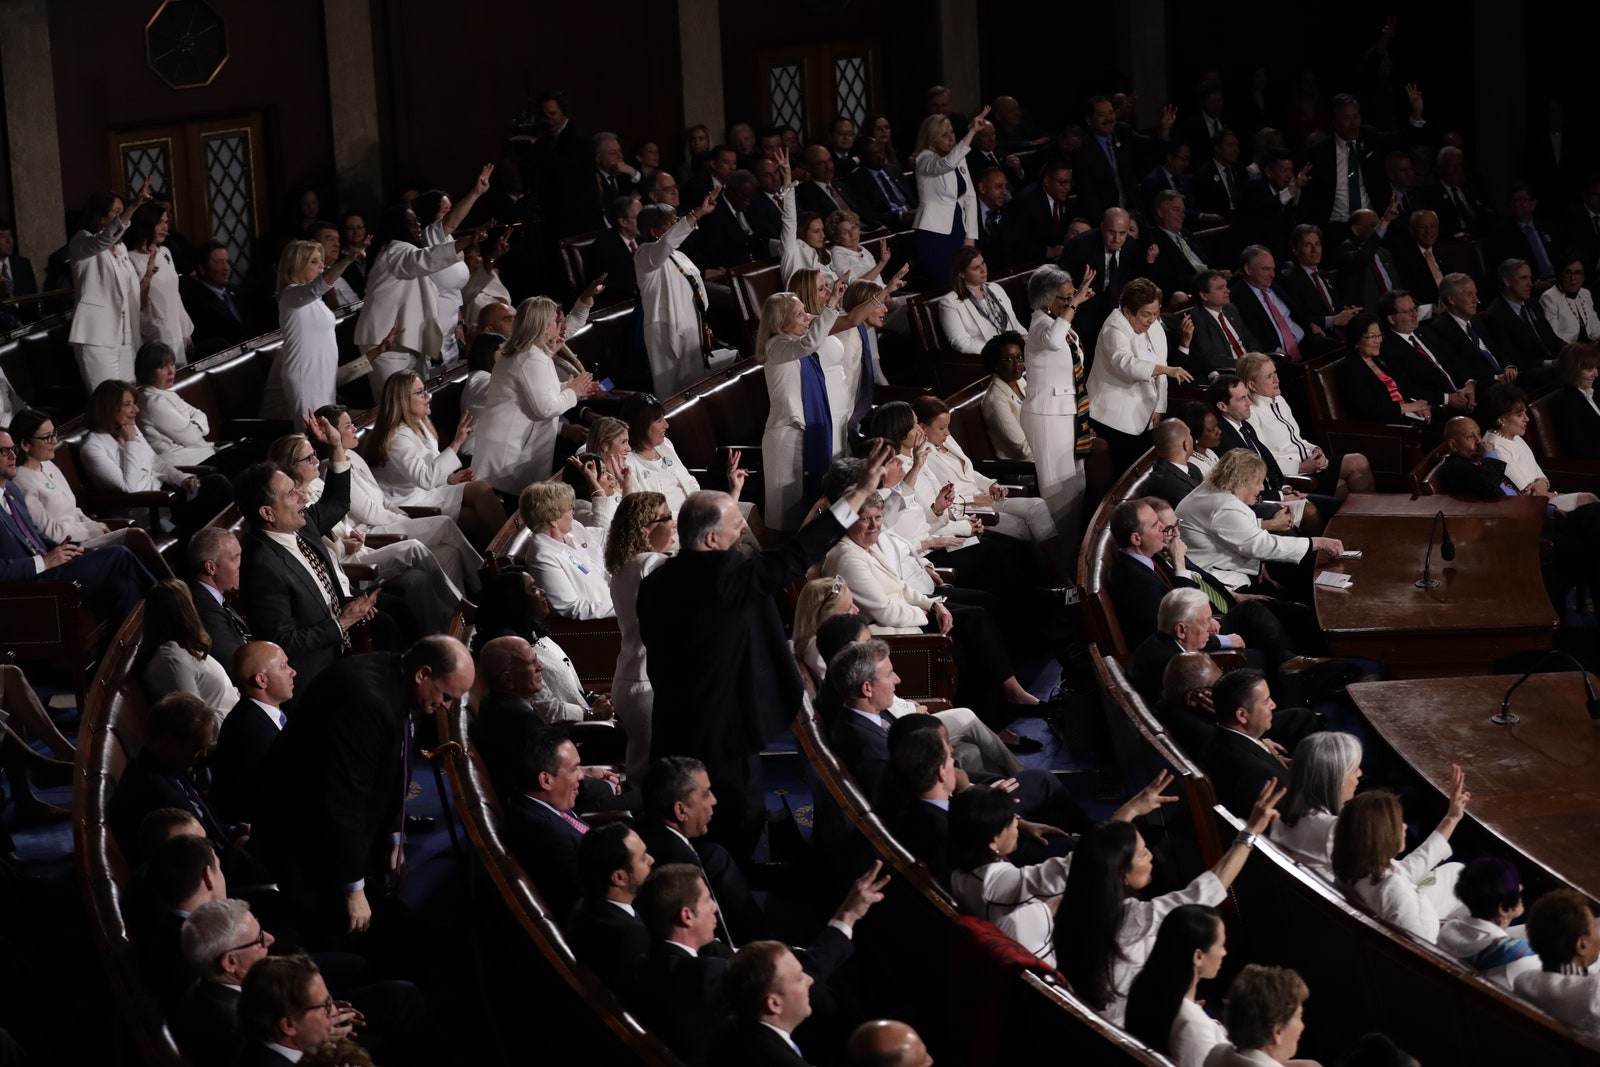 Мелания Трамп пришла в темносинем костюме на слушание речи президента в Конгрессе — и выделилась на общем фоне